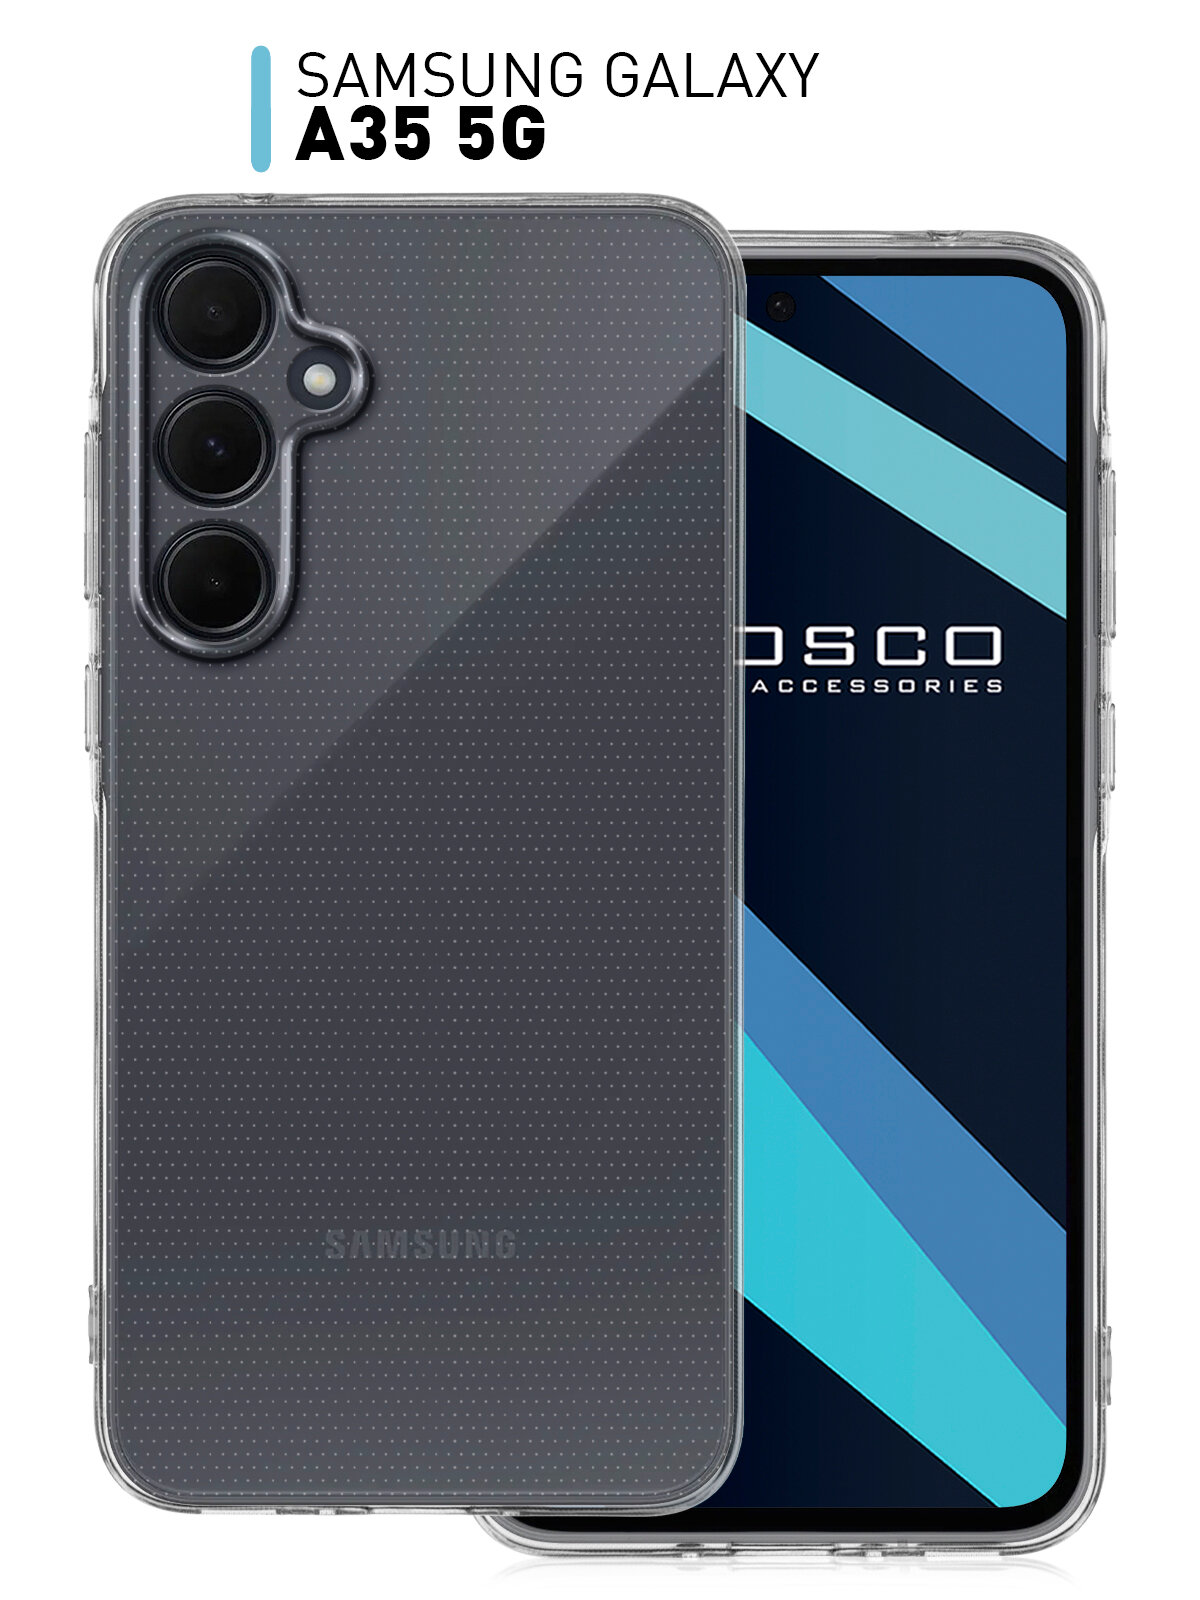 Чехол ROSCO для Samsung Galaxy A35 (Самсунг Галакси А35) с защитой блока камеры, силиконовый чехол, аккуратные вырезы, гибкий, прозрачный чехол